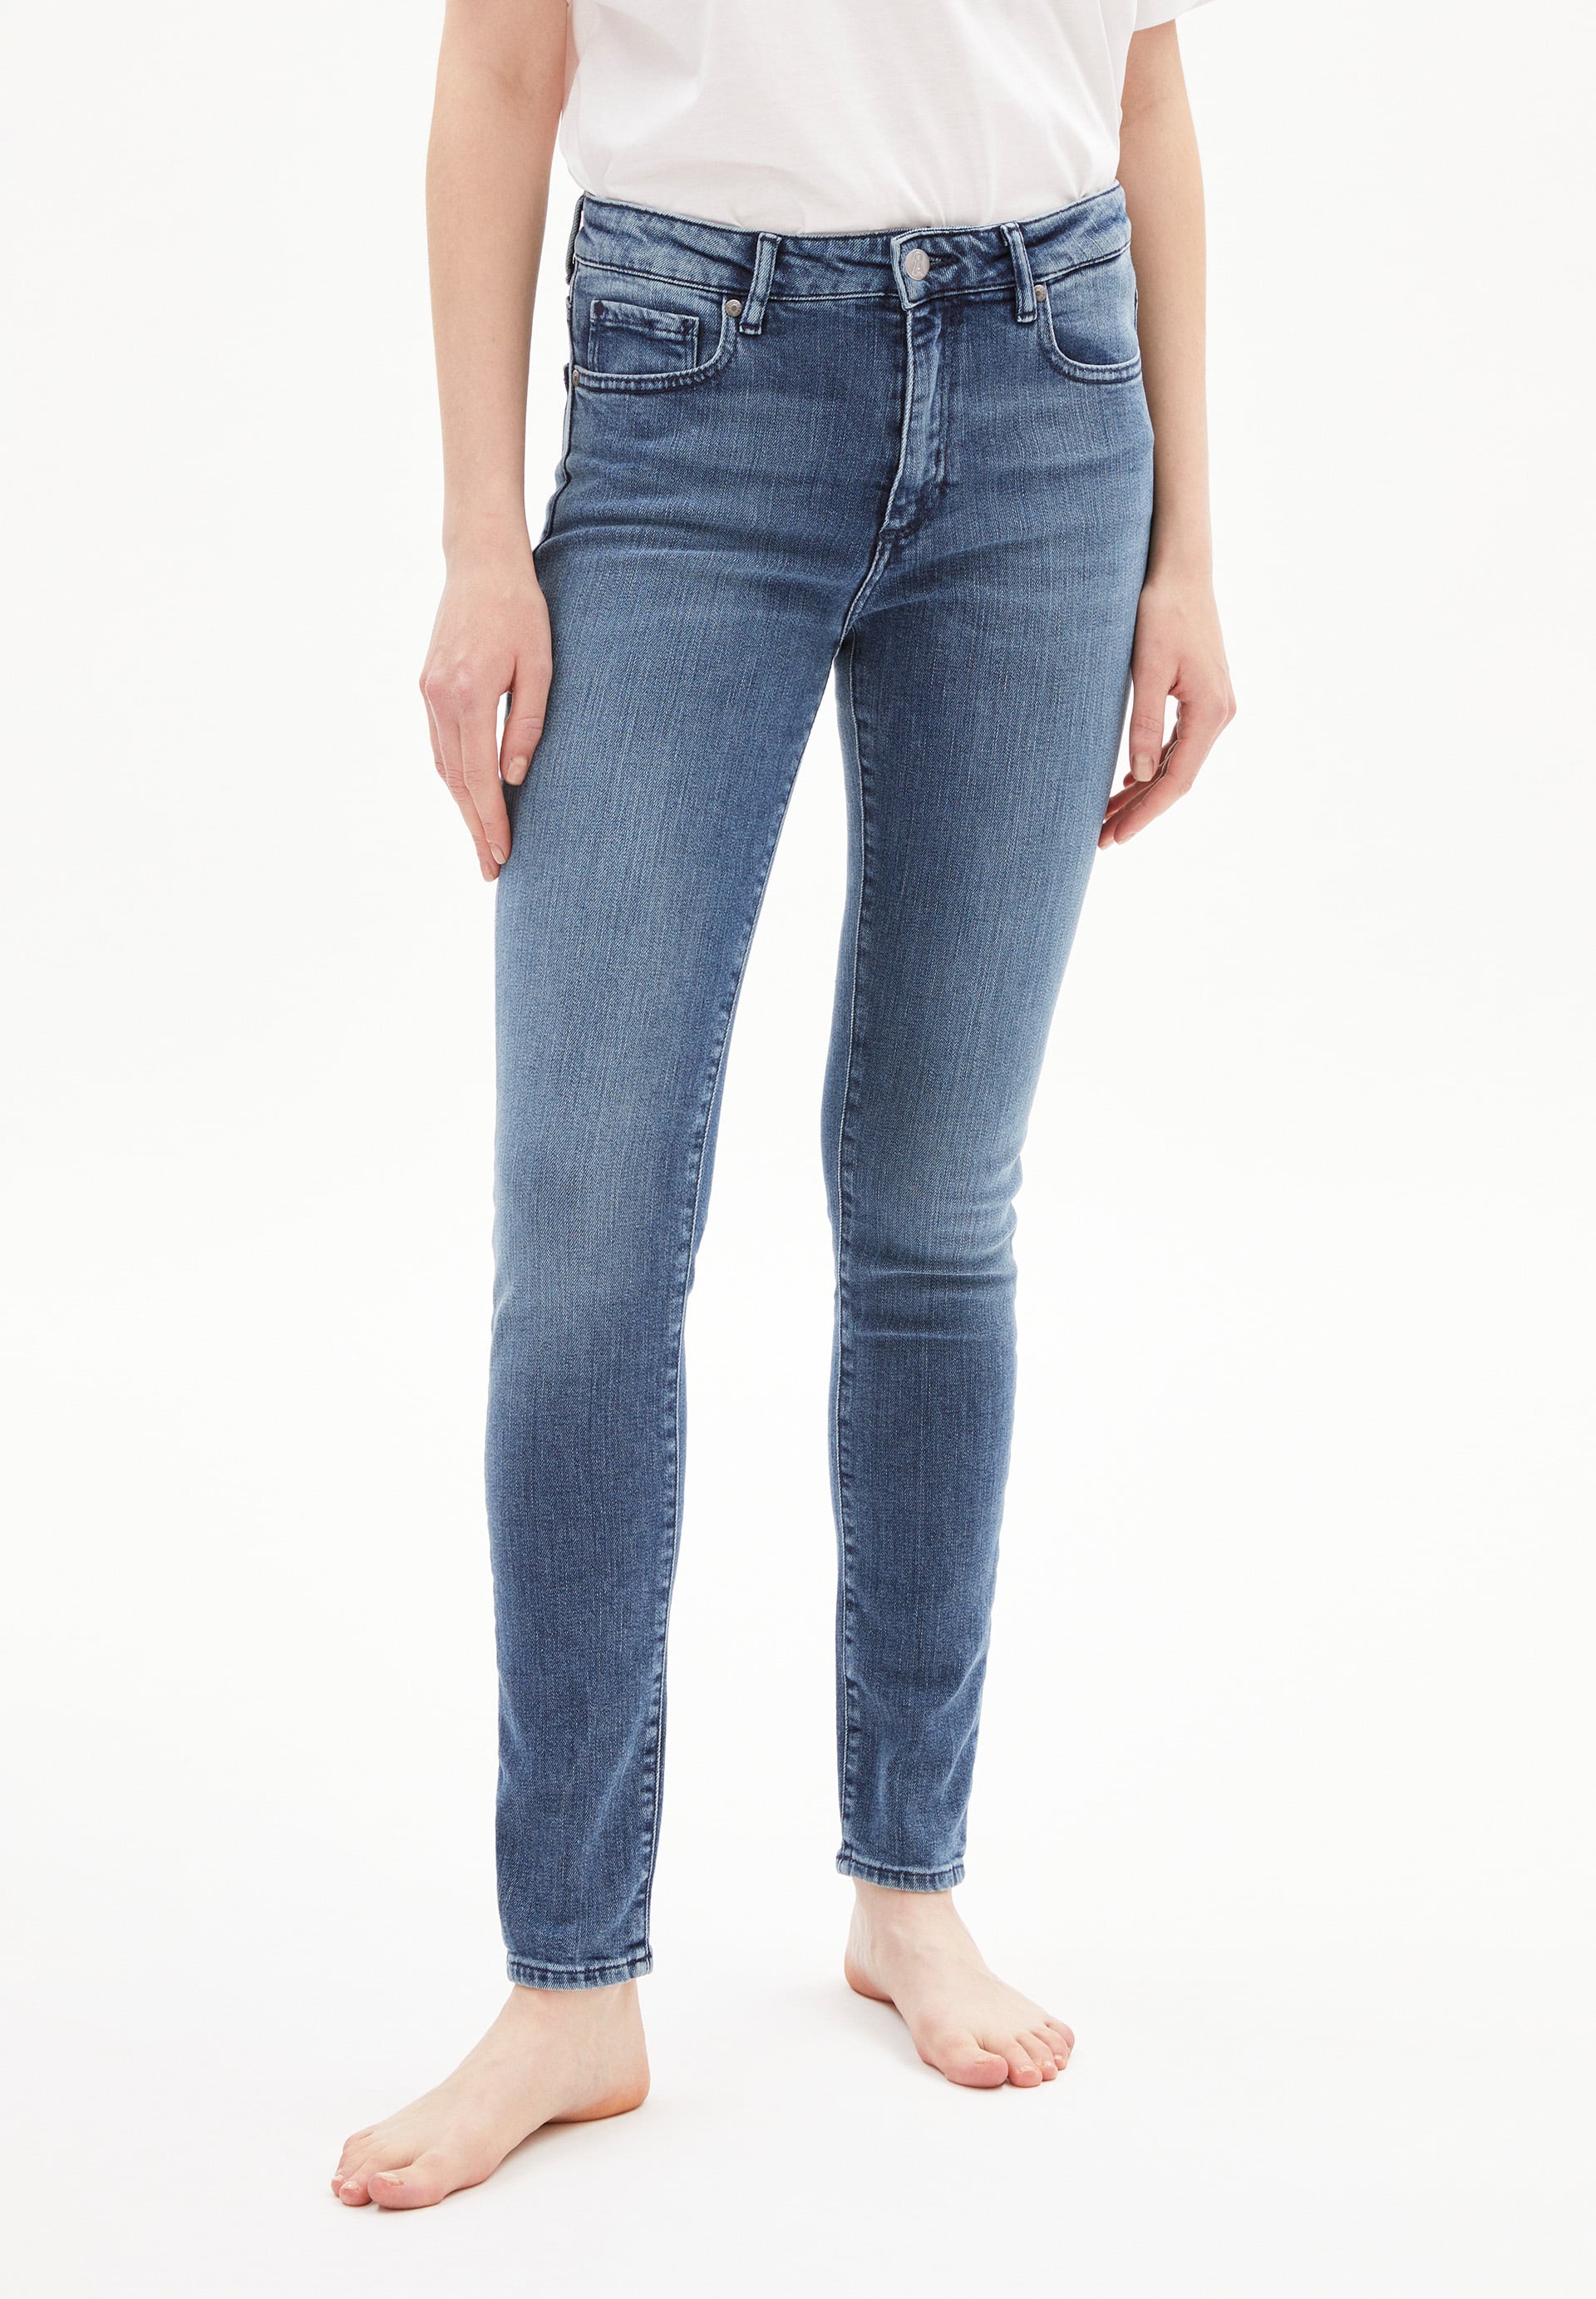 Jeans TILLAA in stone wash von ARMEDANGELS günstig online kaufen